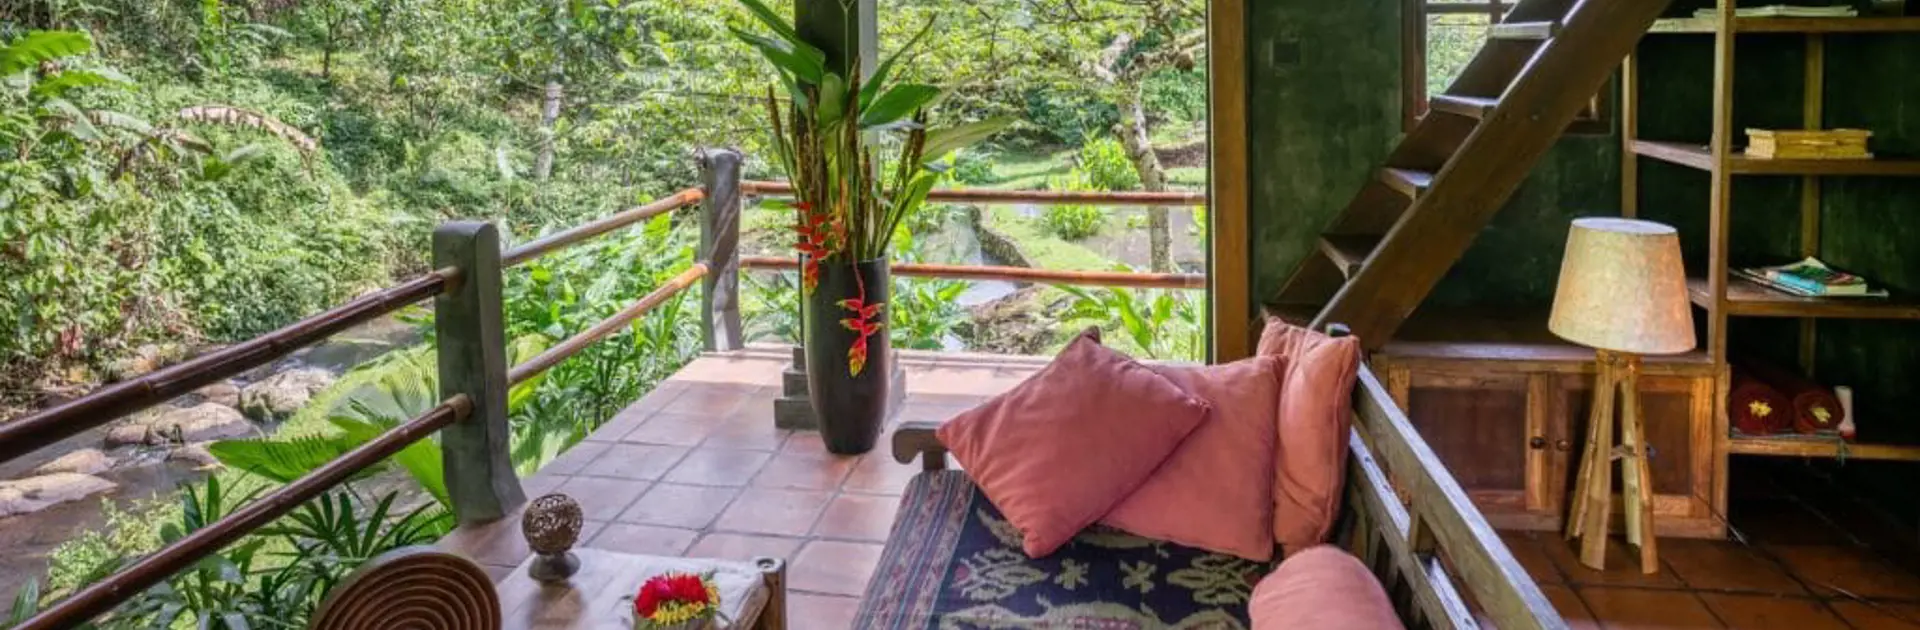 ECO STAY - På rejsen får I også den unikke oplevelse at bo på Bali Eco Stay i spektakulære omgivelser i junglen.